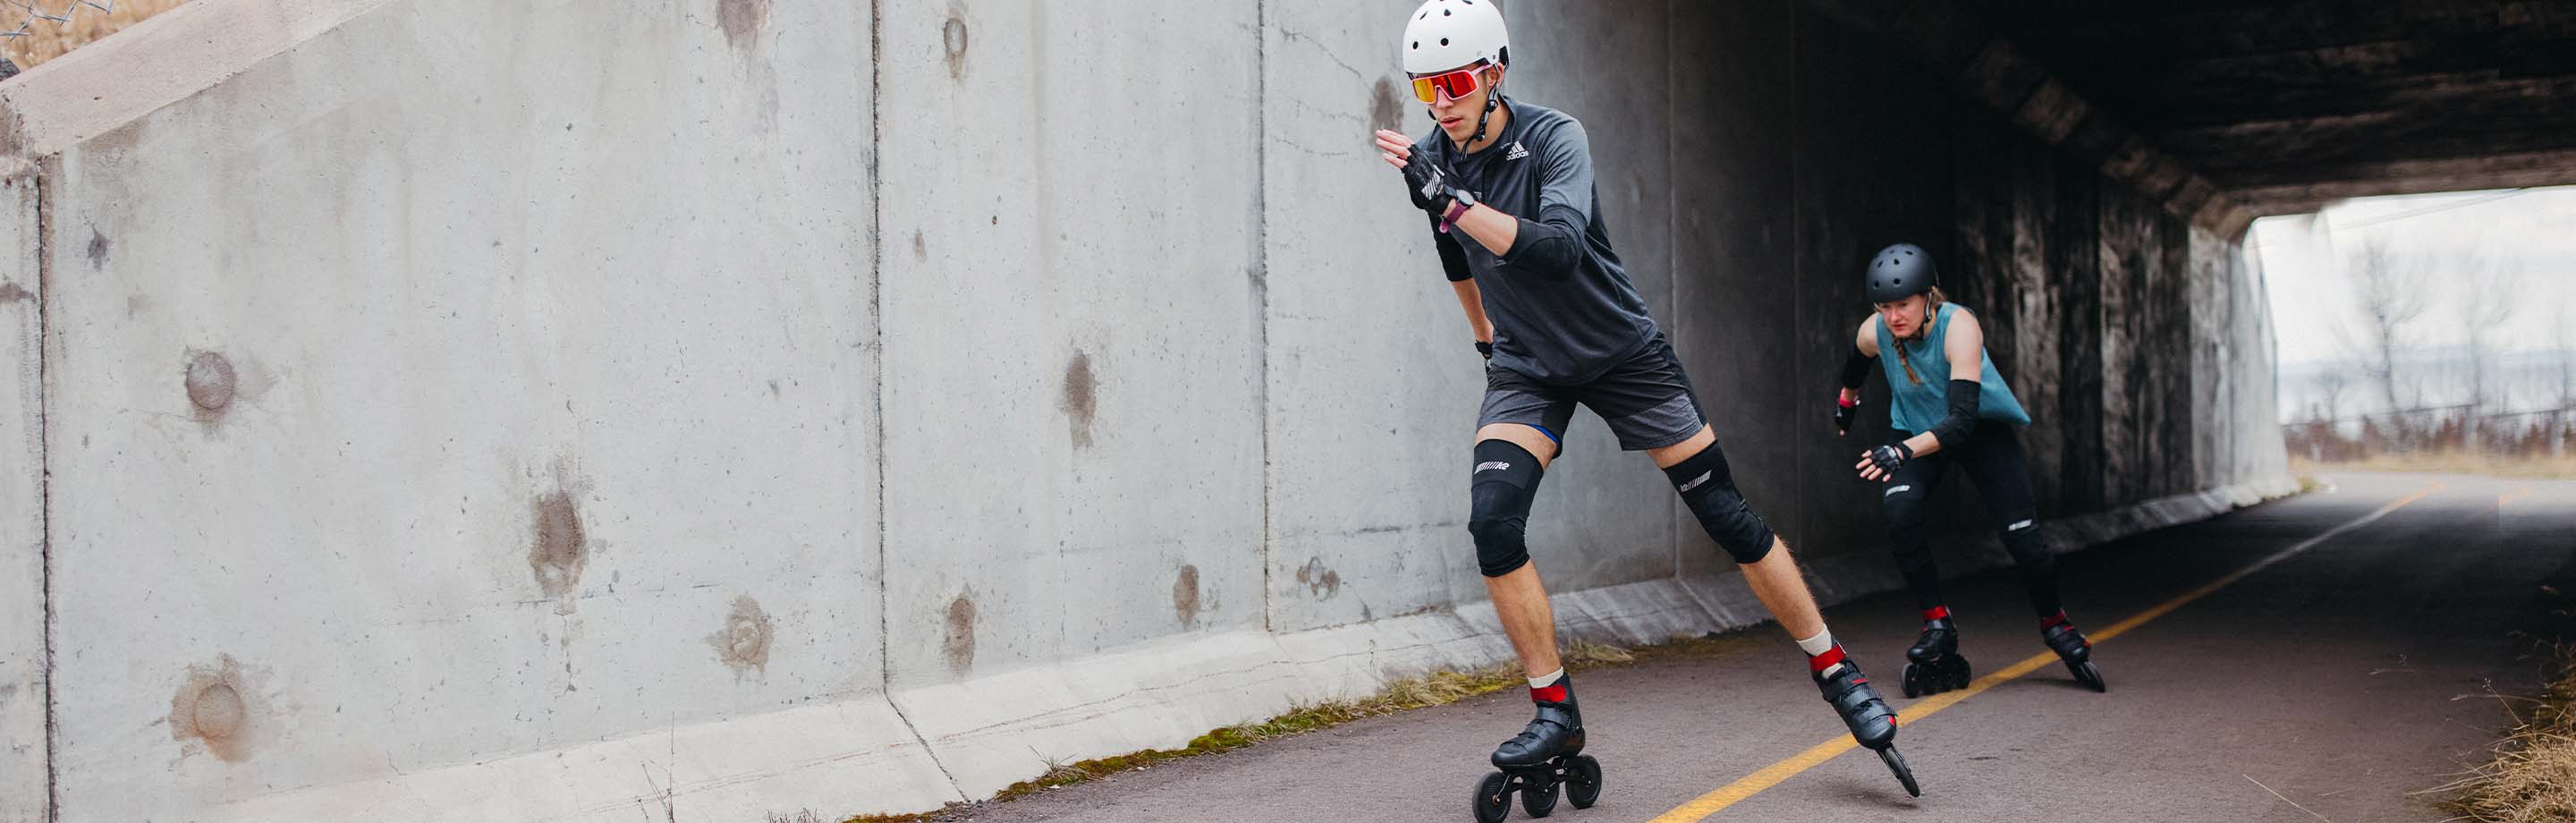 K2 Skates - inline skates van het iconische merk voor fitness en ambitieuze training